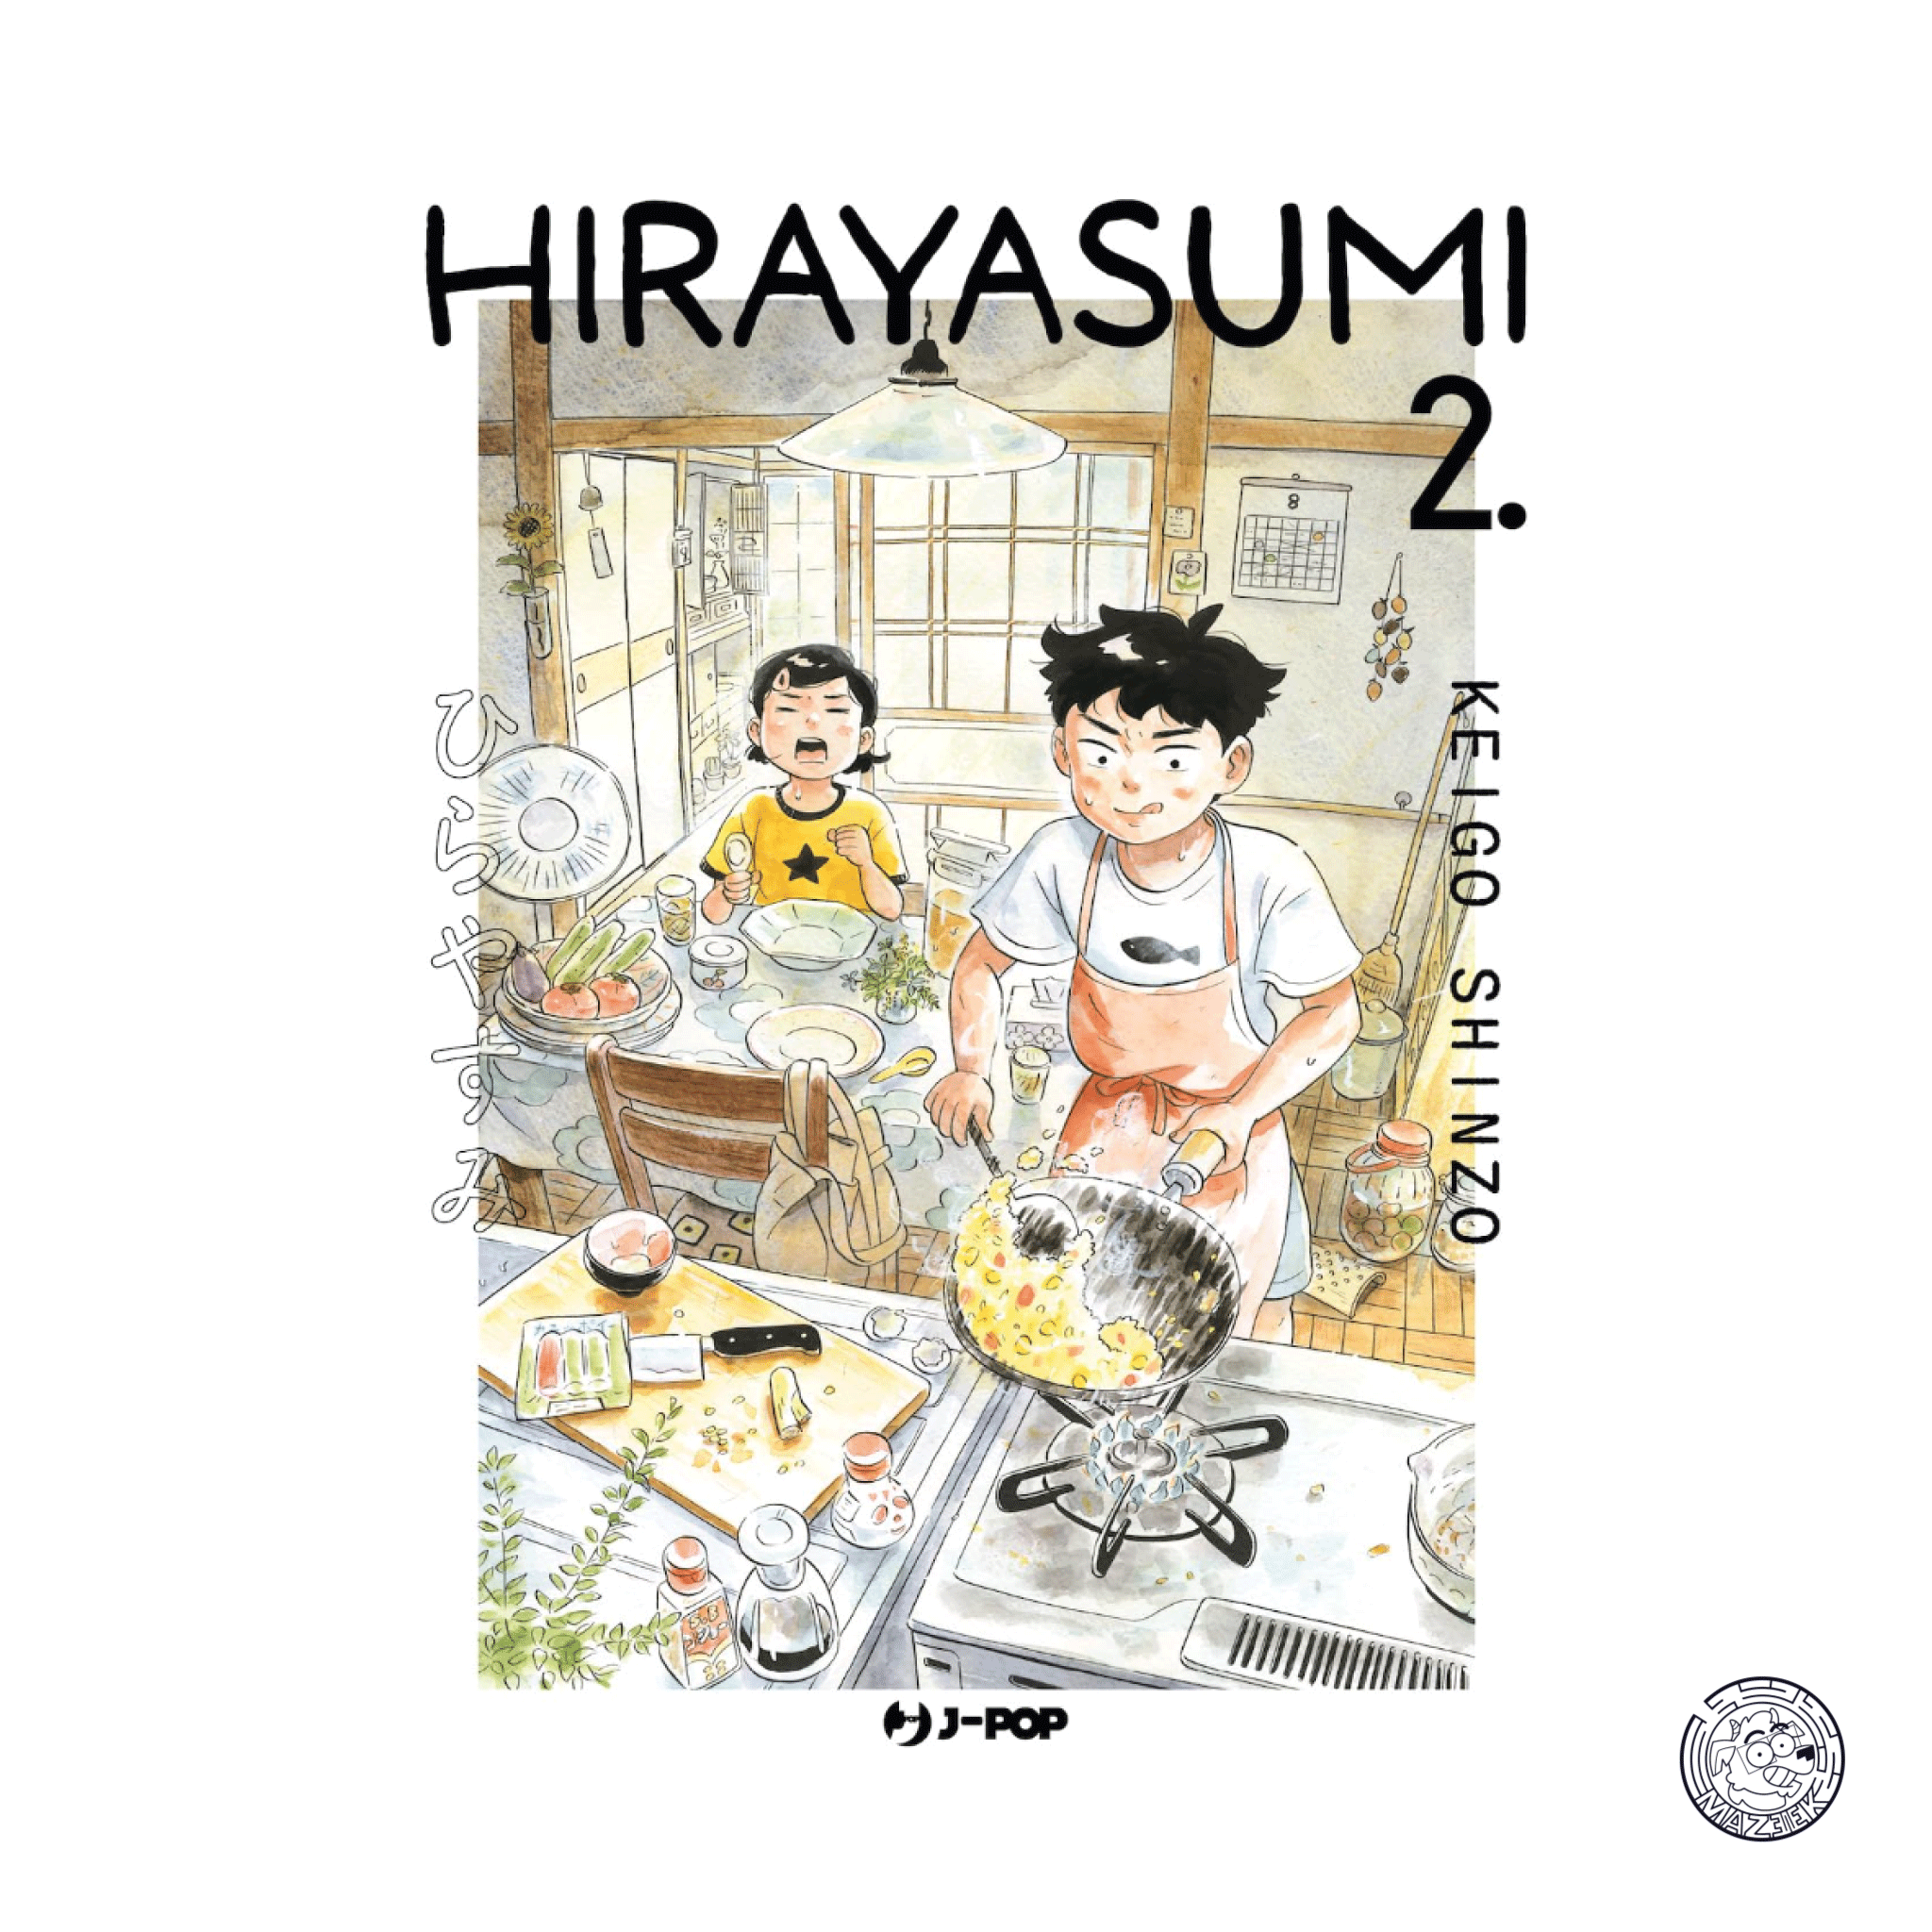 Hirayasumi 02